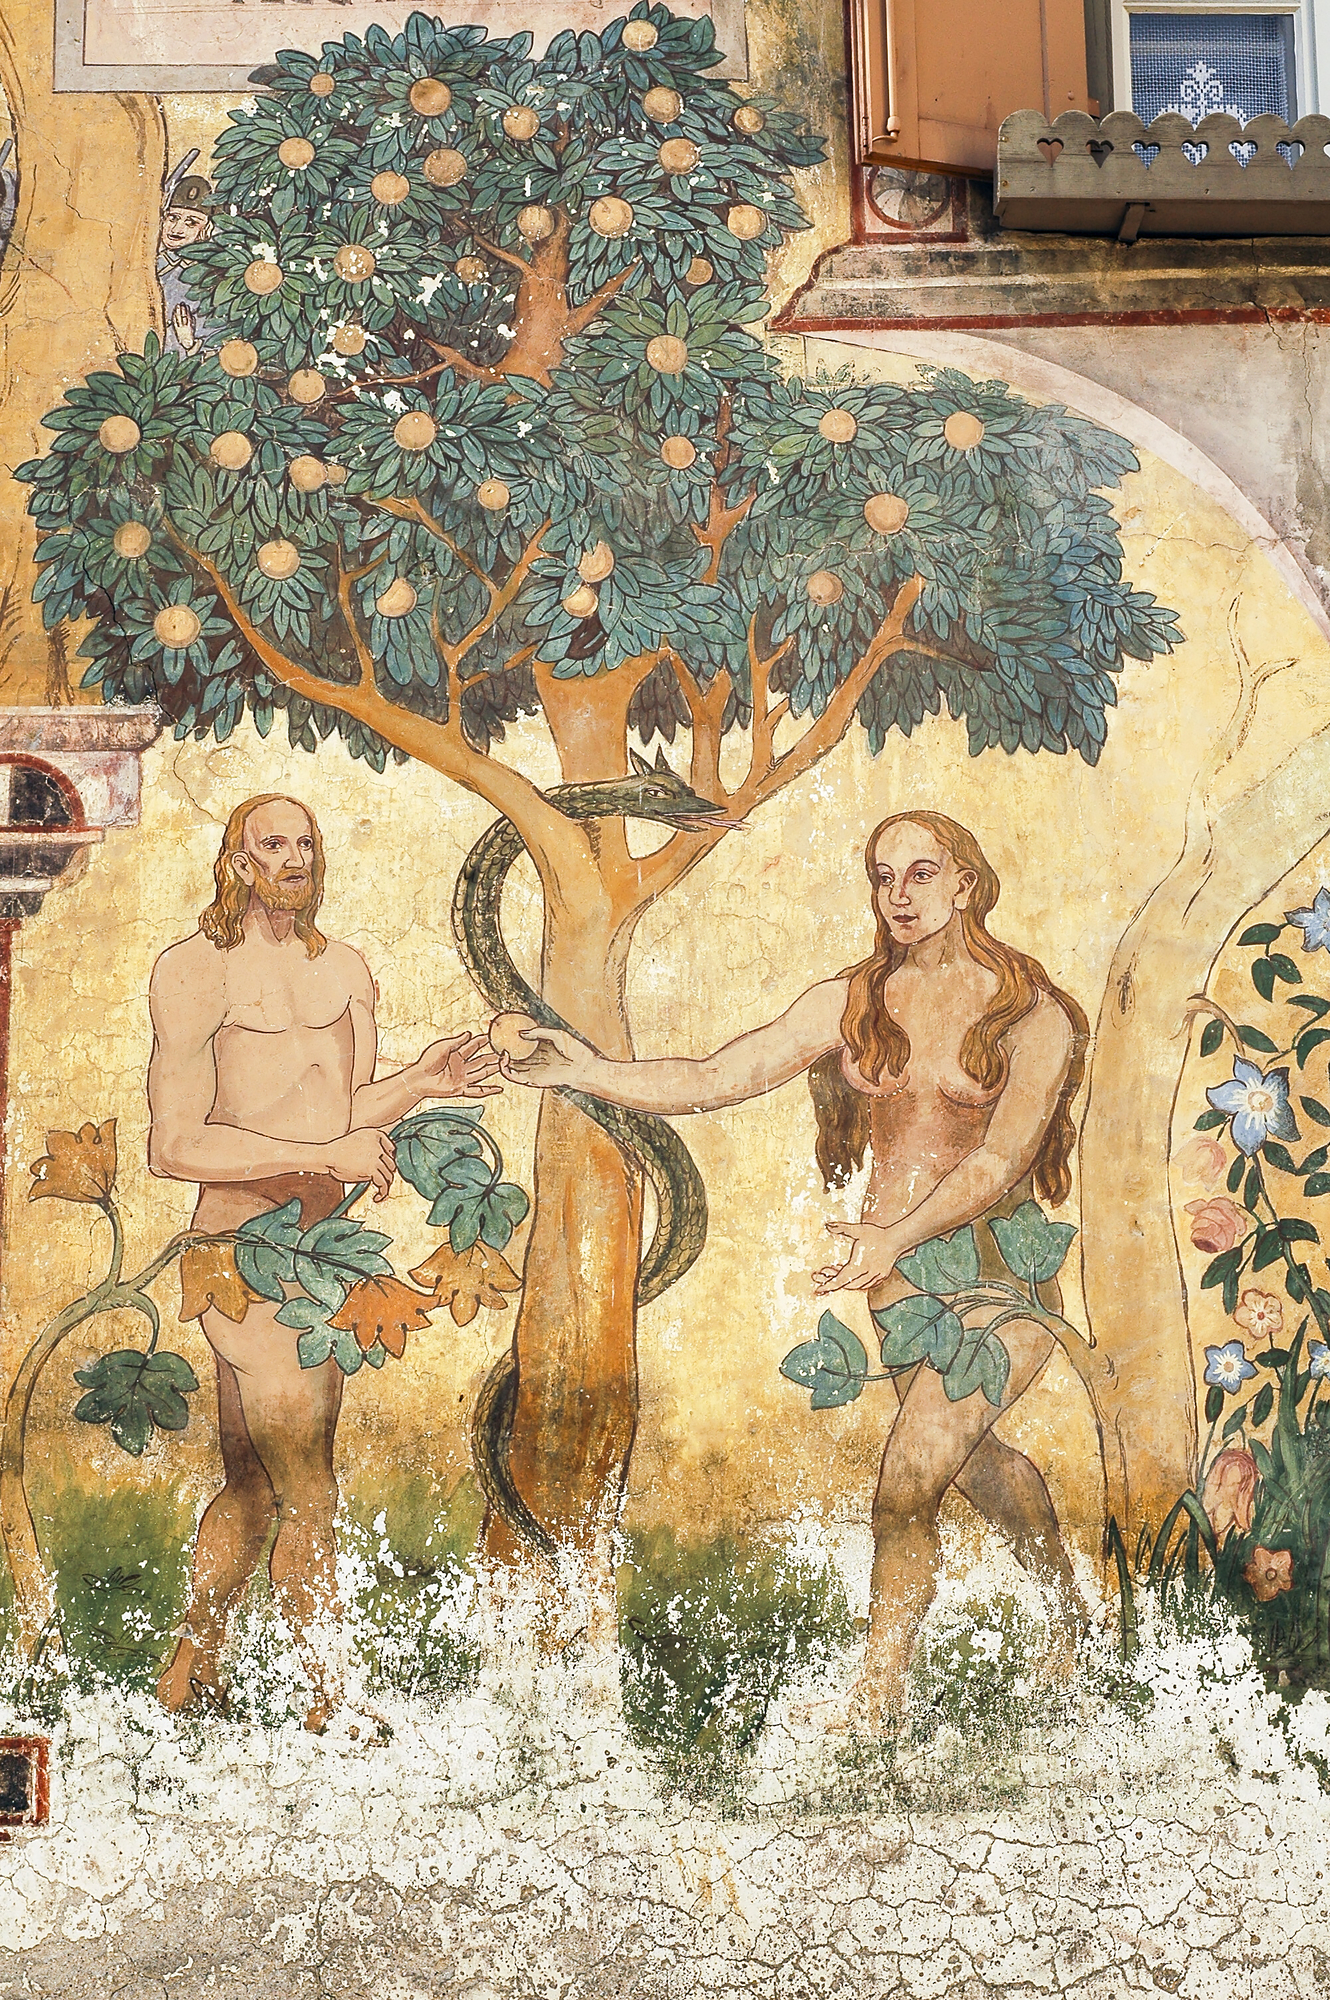 We are descendants of Adam & Eve